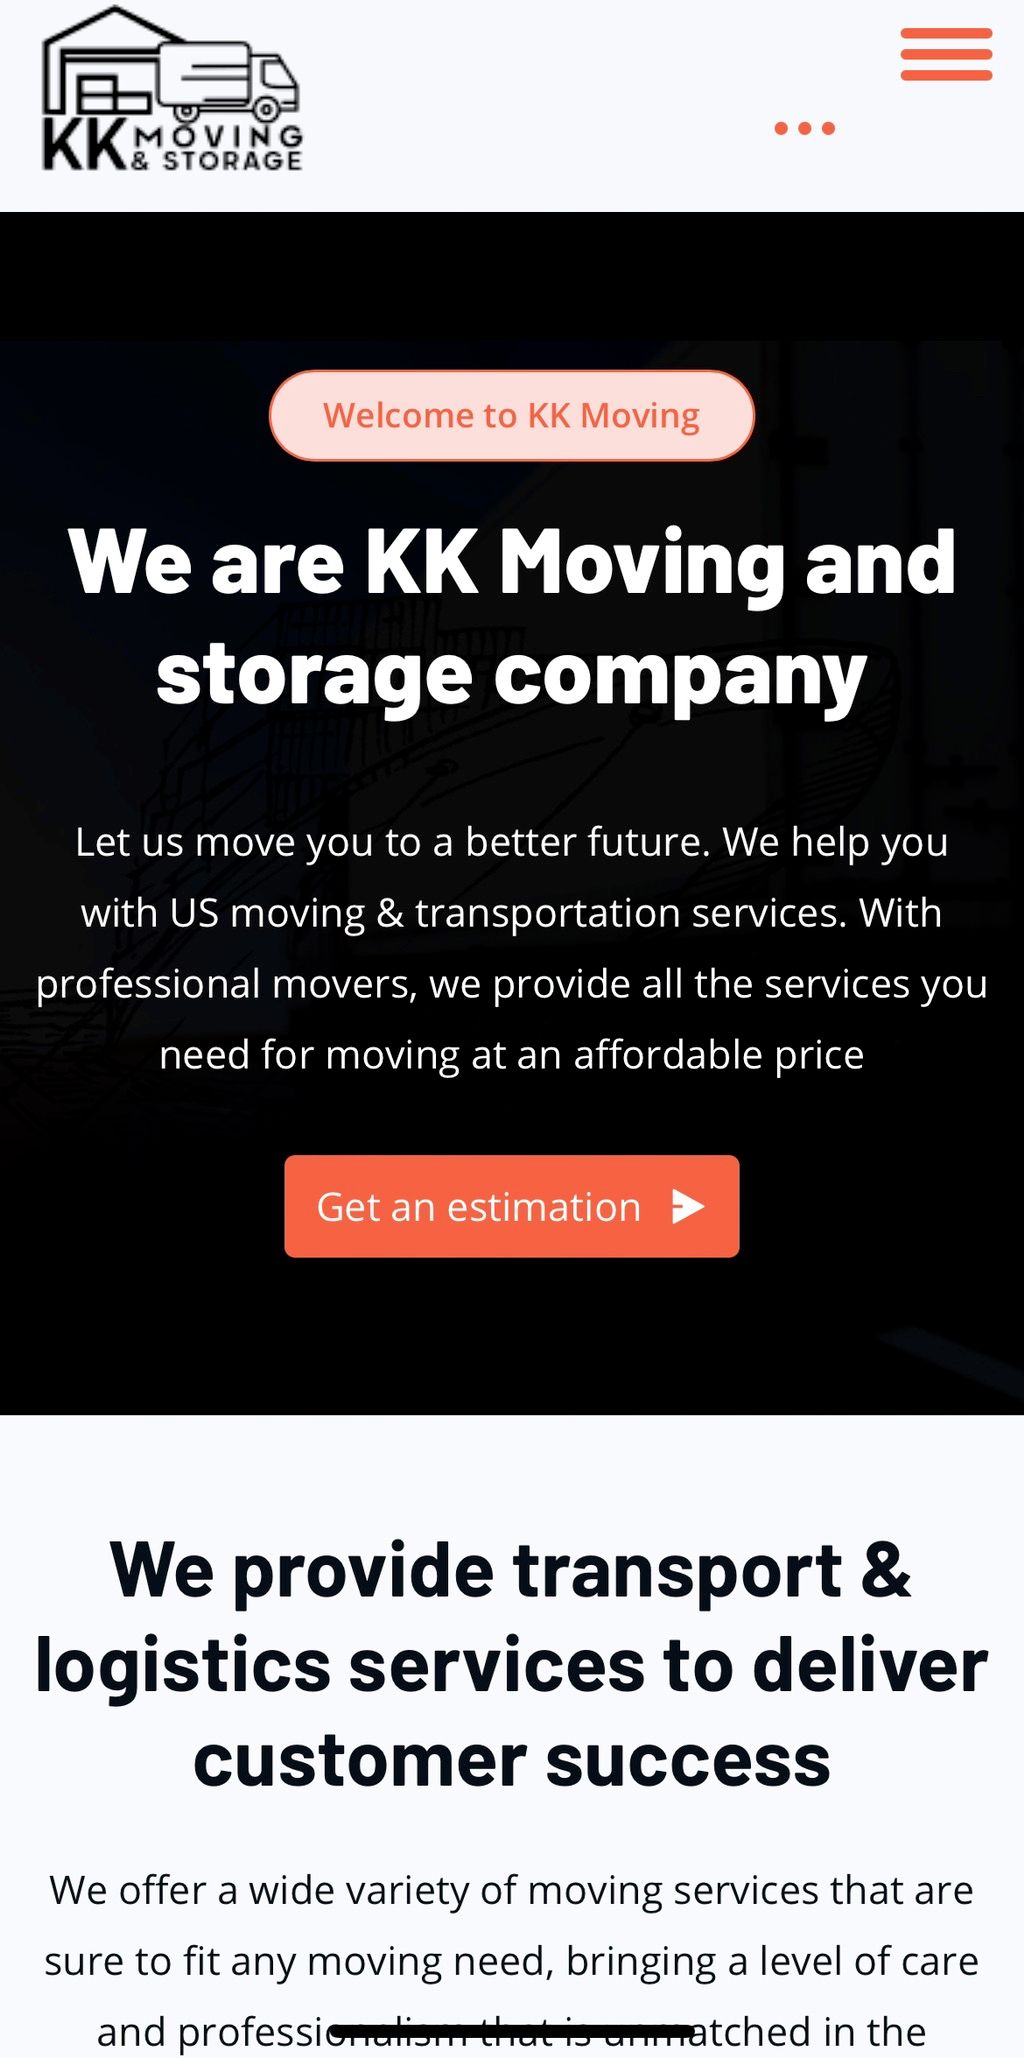 KK moving & storage